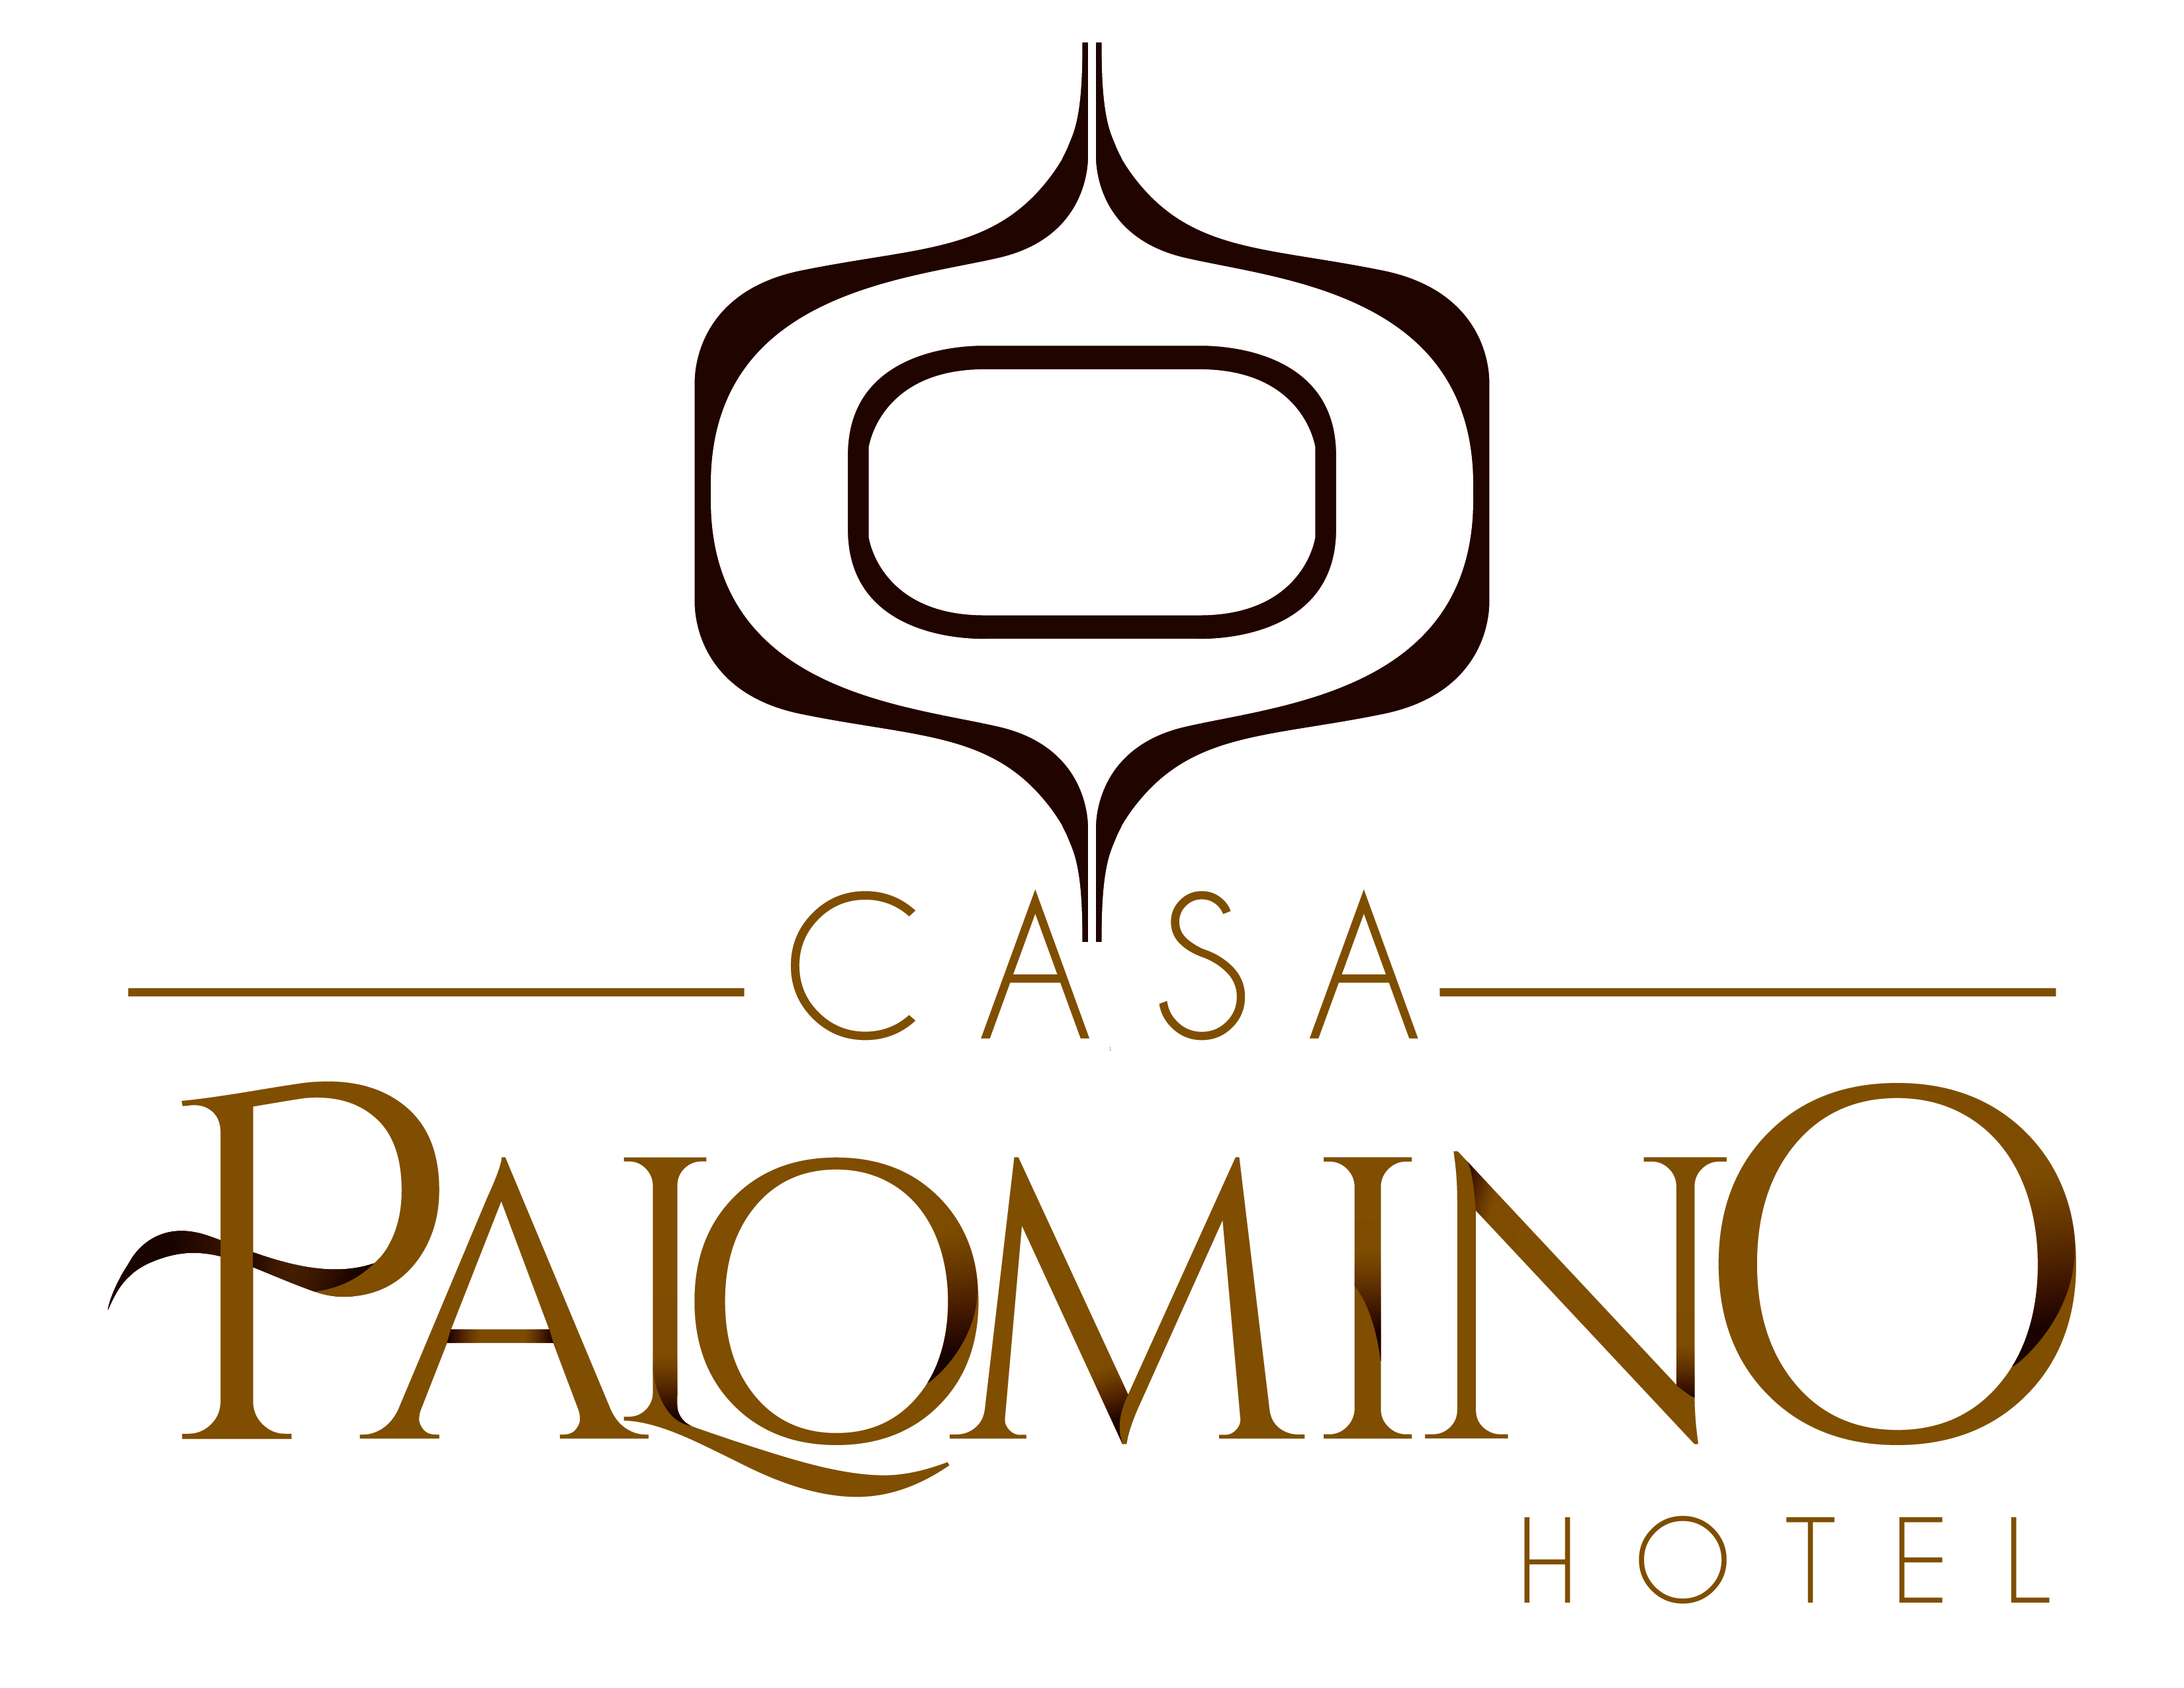 HOTEL CASA PALOMINO